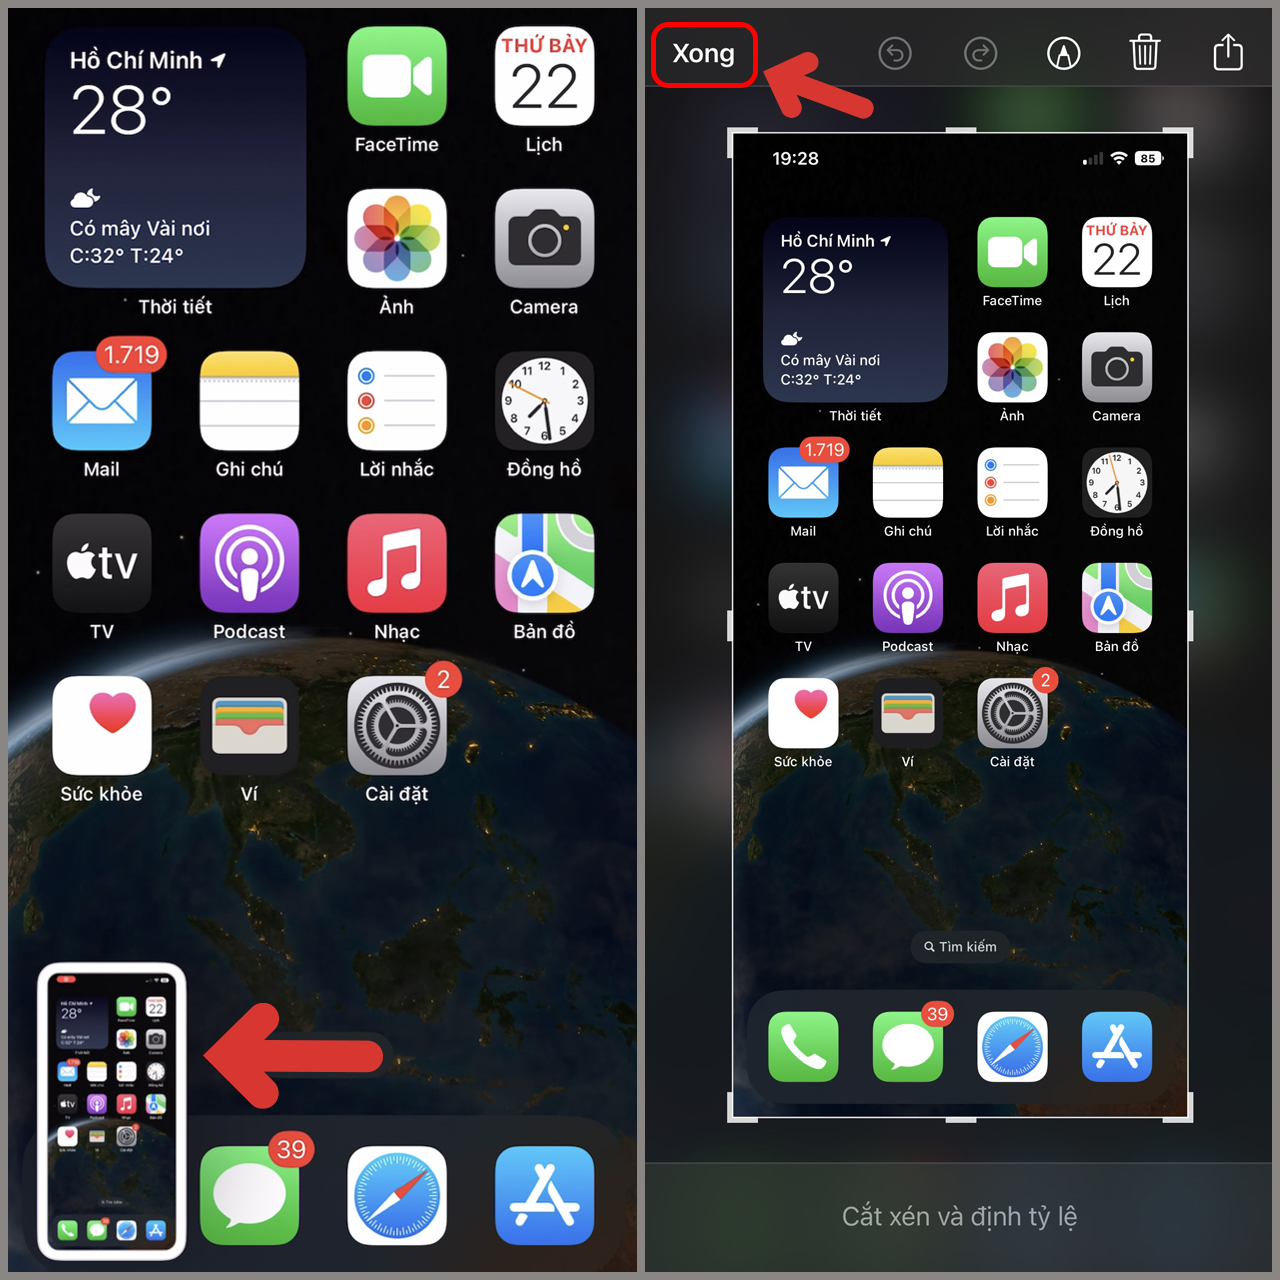 iPhone 14 Pro là một siêu phẩm công nghệ với màn hình rực rỡ và độ phân giải cao. Để tận dụng tối đa tính năng này, hãy xem ngay hình ảnh chụp màn hình của iPhone 14 Pro để biết thêm về cách chụp màn hình đẹp và sắc nét.